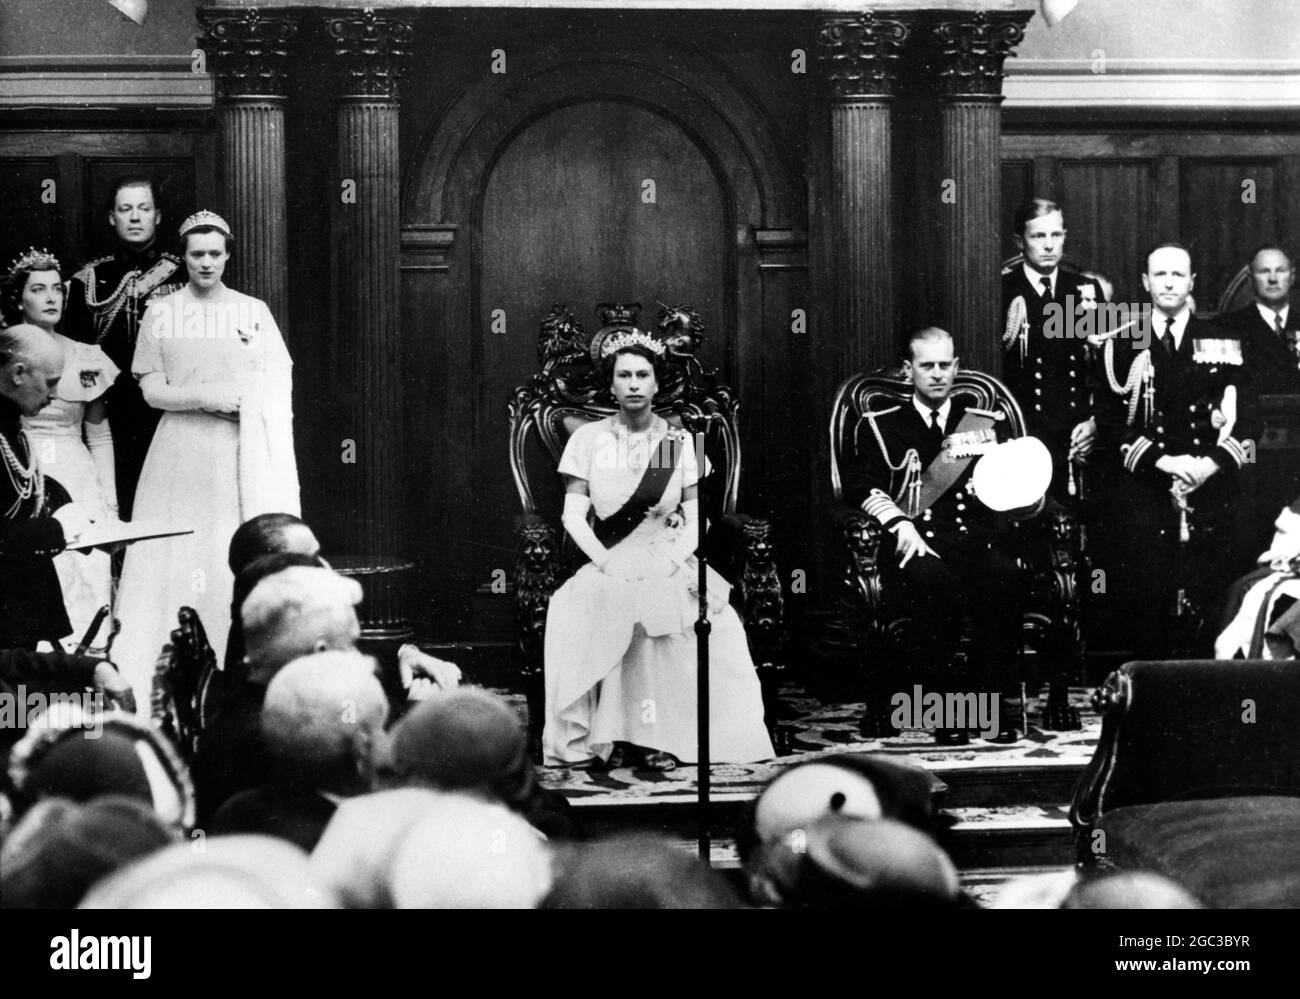 Königin Elizabeth II. Macht Geschichte, denn mit dem Herzog von Edinburgh an ihrer Seite nimmt sie ihren Sitz im tasmanischen Legislativrat ein, um das Landtagsparlament in Hobart im März 1954 zu eröffnen Stockfoto